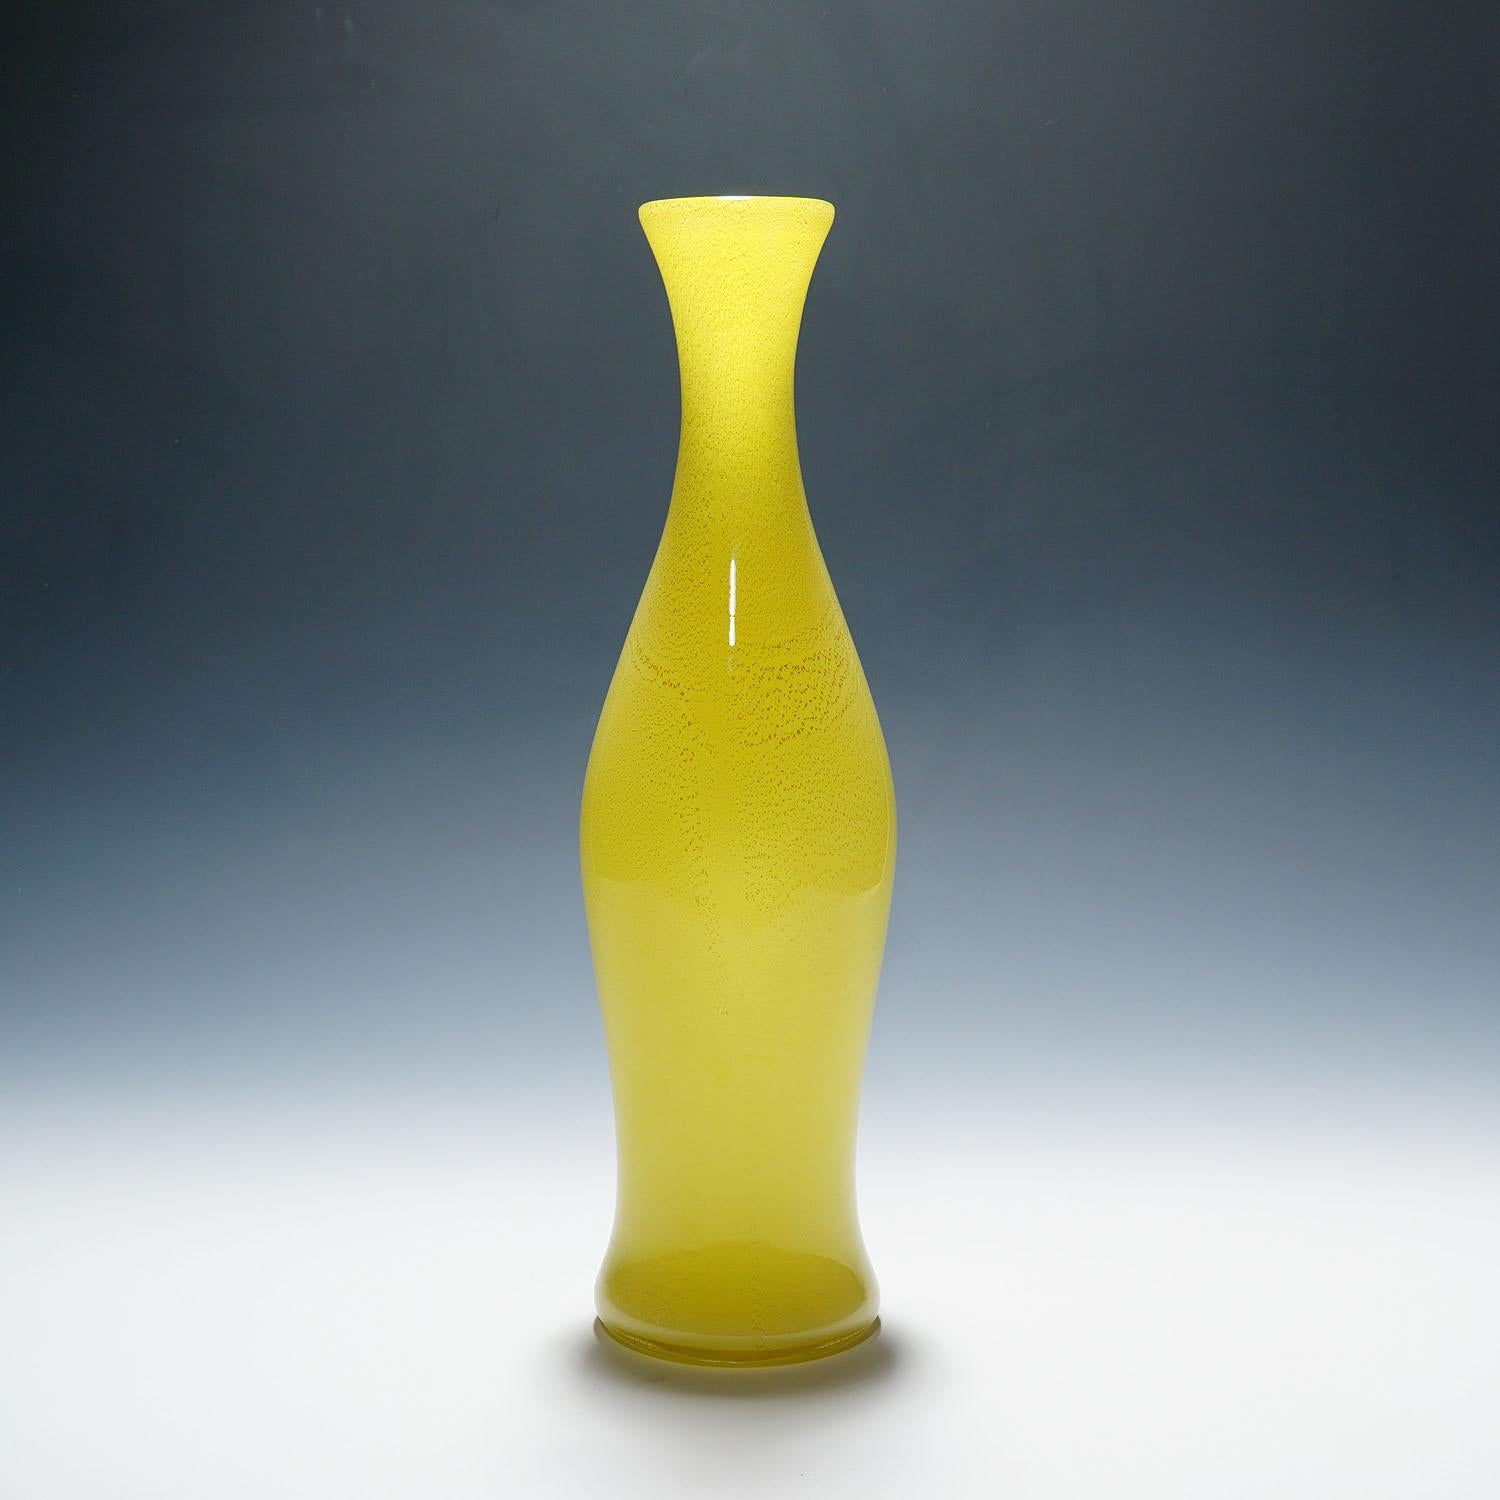 Große Soffiato-Glasvase von Galliano Ferro, Murano ca. 1950er Jahre

Eine große Vase aus Kunstglas, hergestellt von Galliano Ferro und wahrscheinlich von Giorigio Ferro oder Vinicio Vianello um 1950 entworfen. Dünnes Glas in mehreren Schichten aus